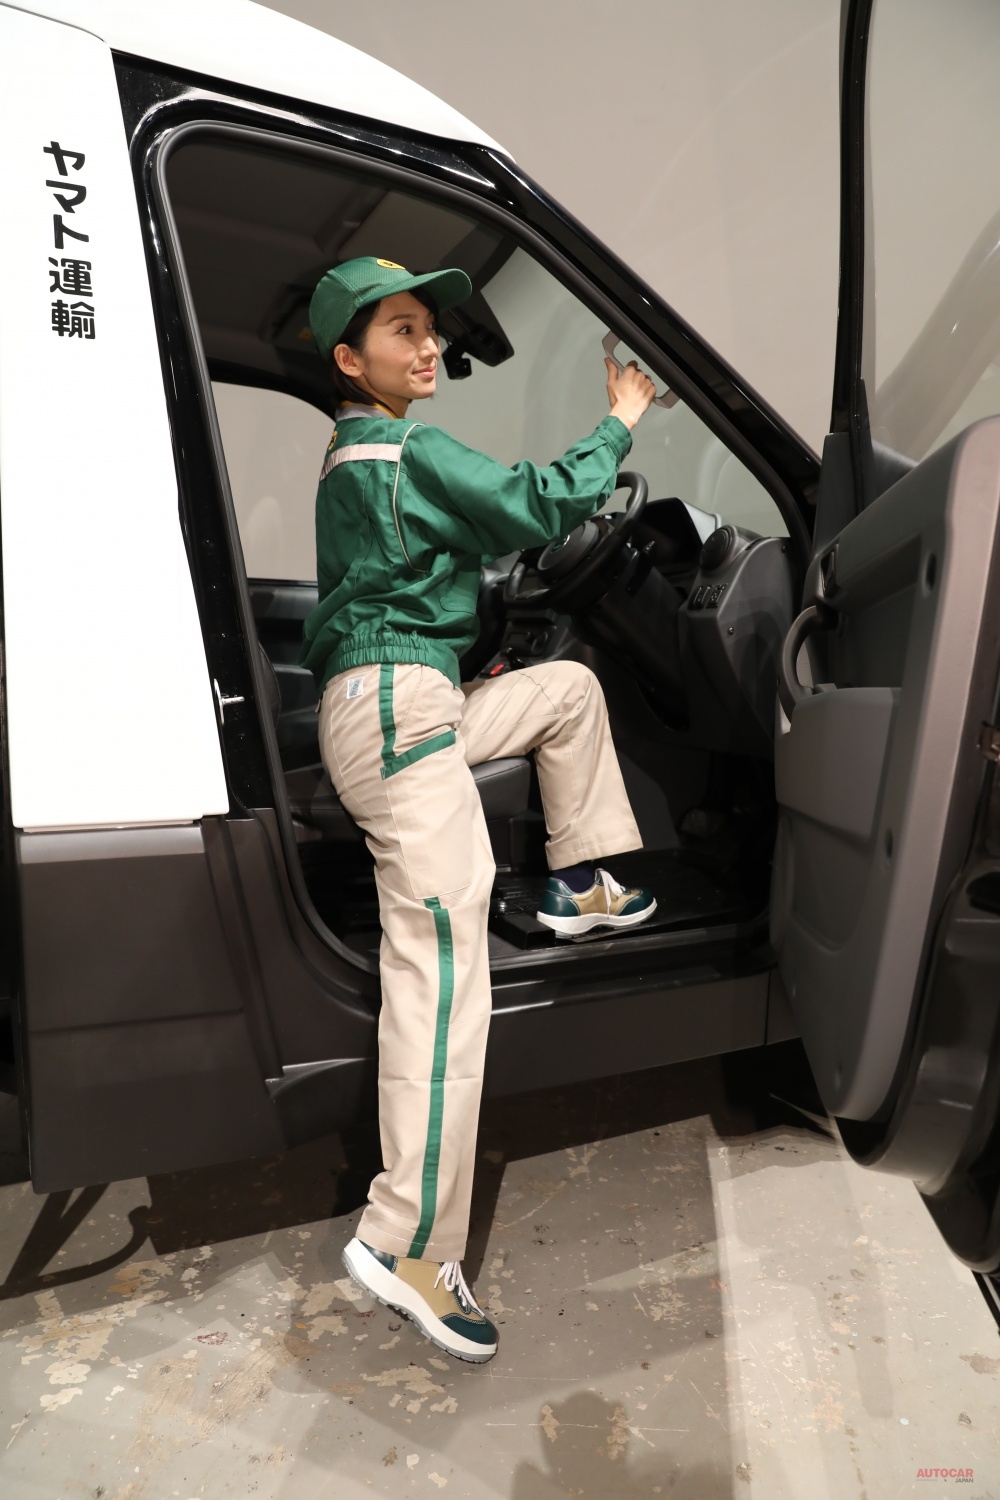 ヤマト運輸のEV配送者は、足腰への負荷を減らすために、普通乗用車並みのシート高さを採用した上で、シート側面の凹凸も極力なくされている。